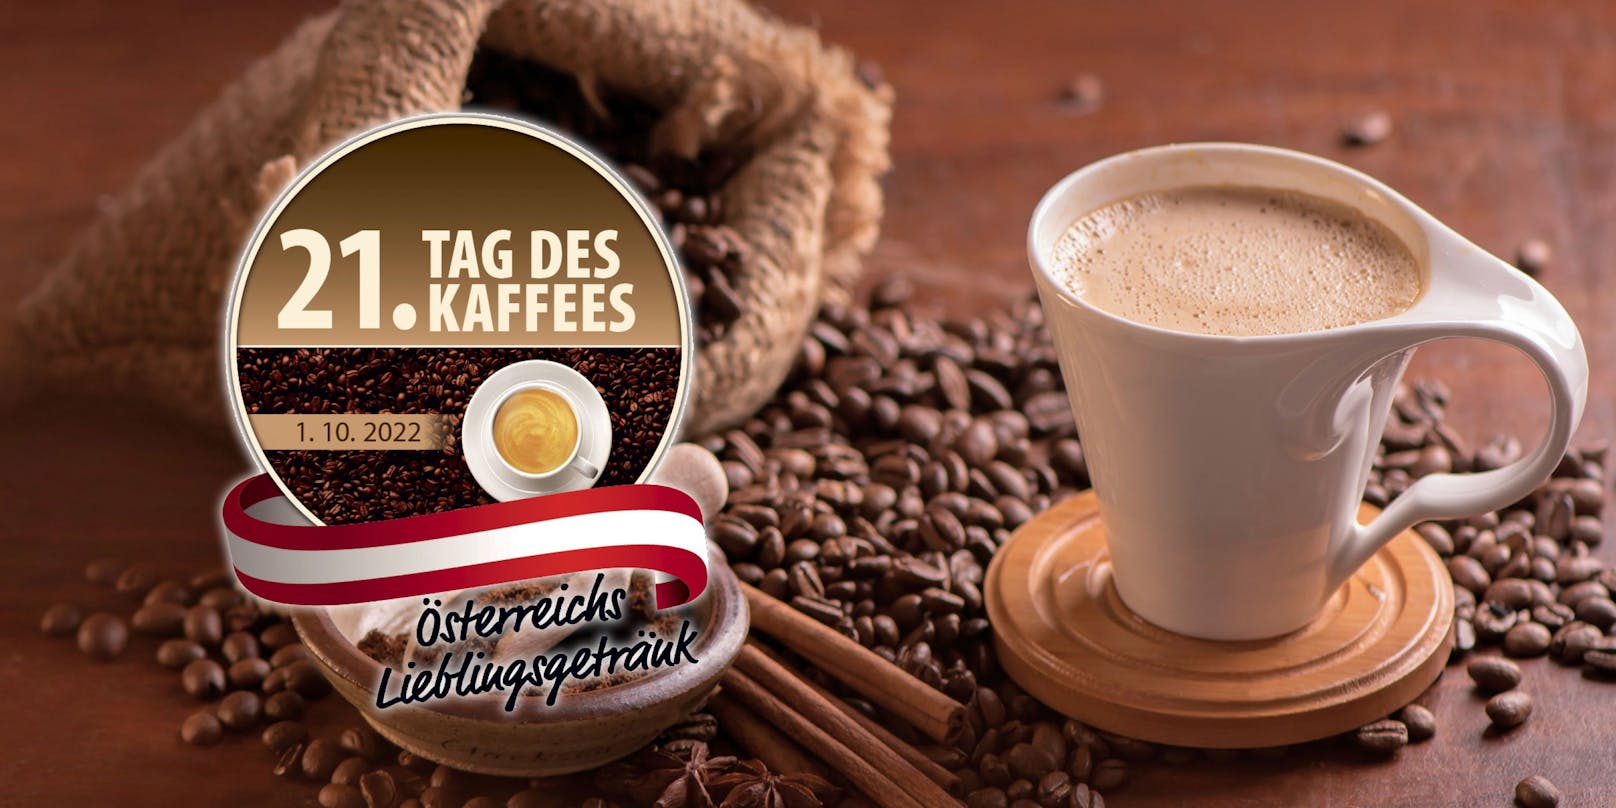 Zum 21. Tag des Kaffees verlost <em>"Heute" </em>fantastische Preise inkl. Kaffeemaschinen &amp; Genusspakete!